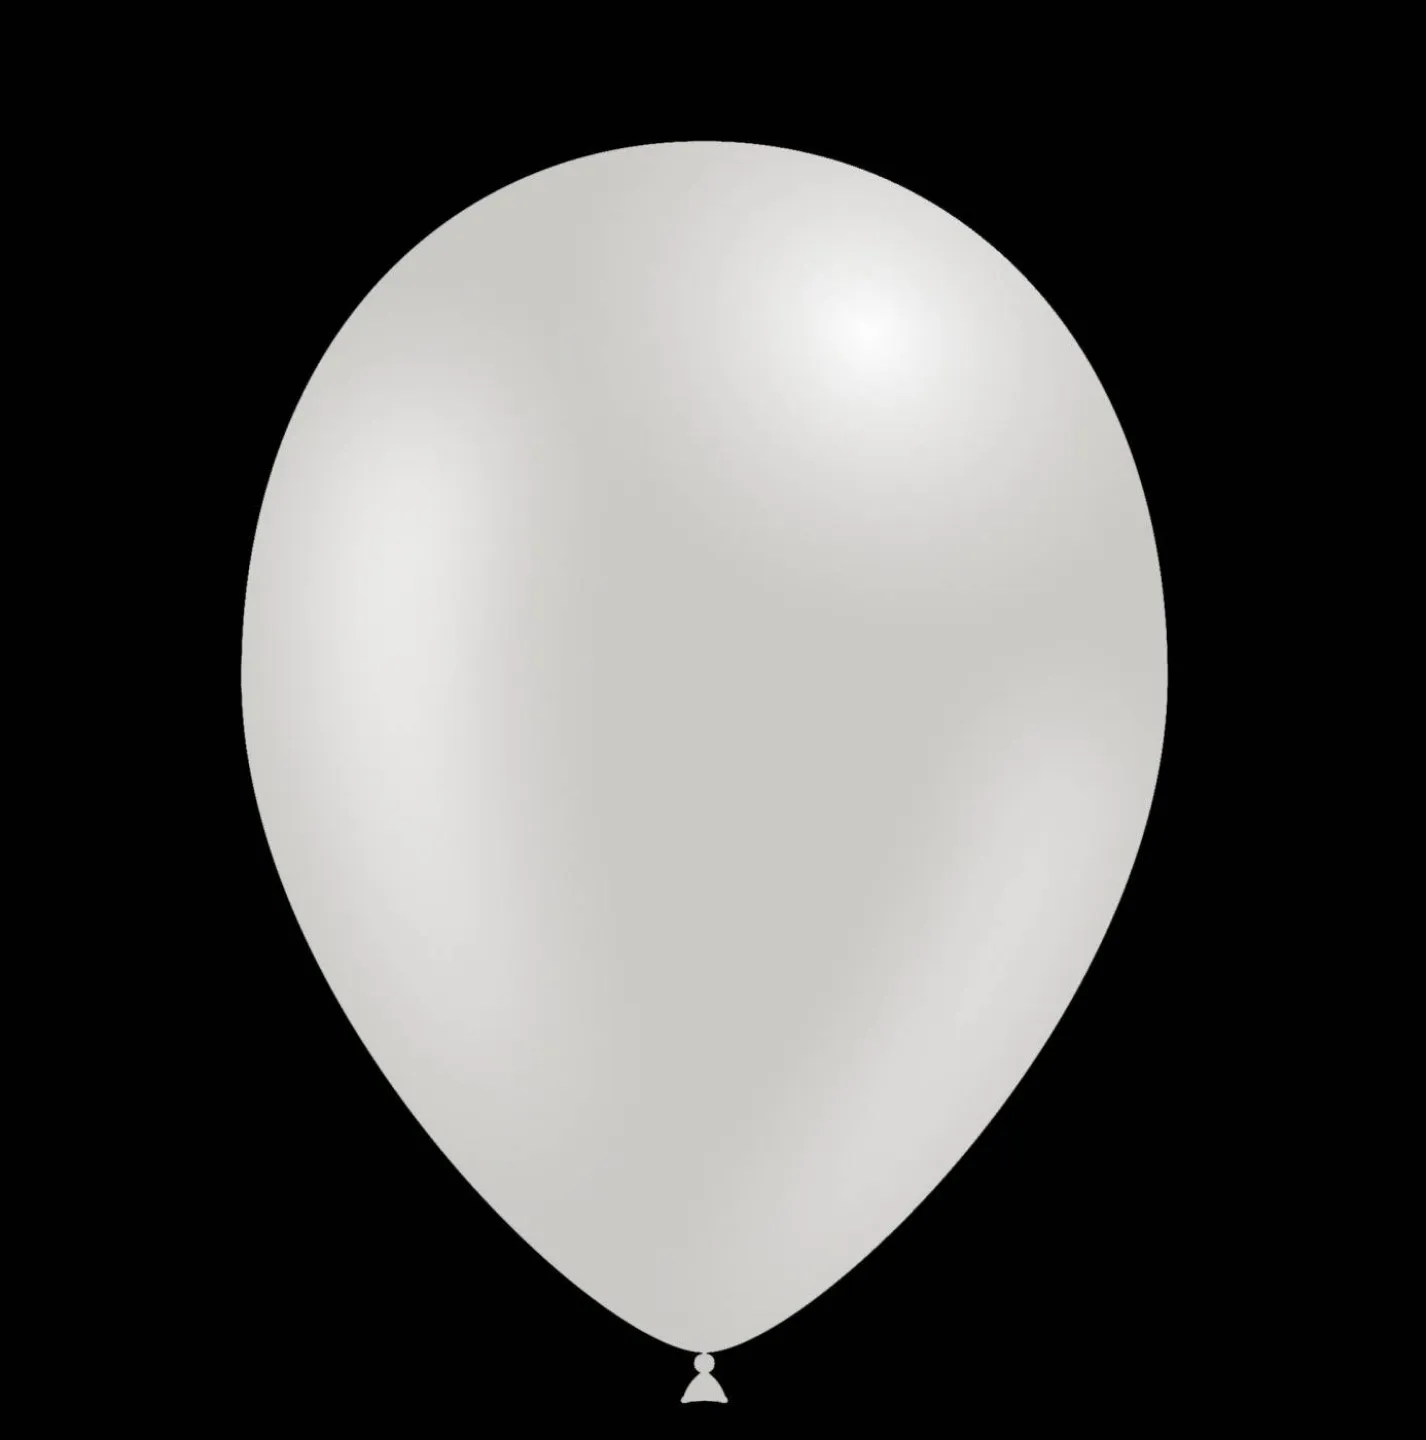 Zilver gekleurde helium ballonnen kopen.